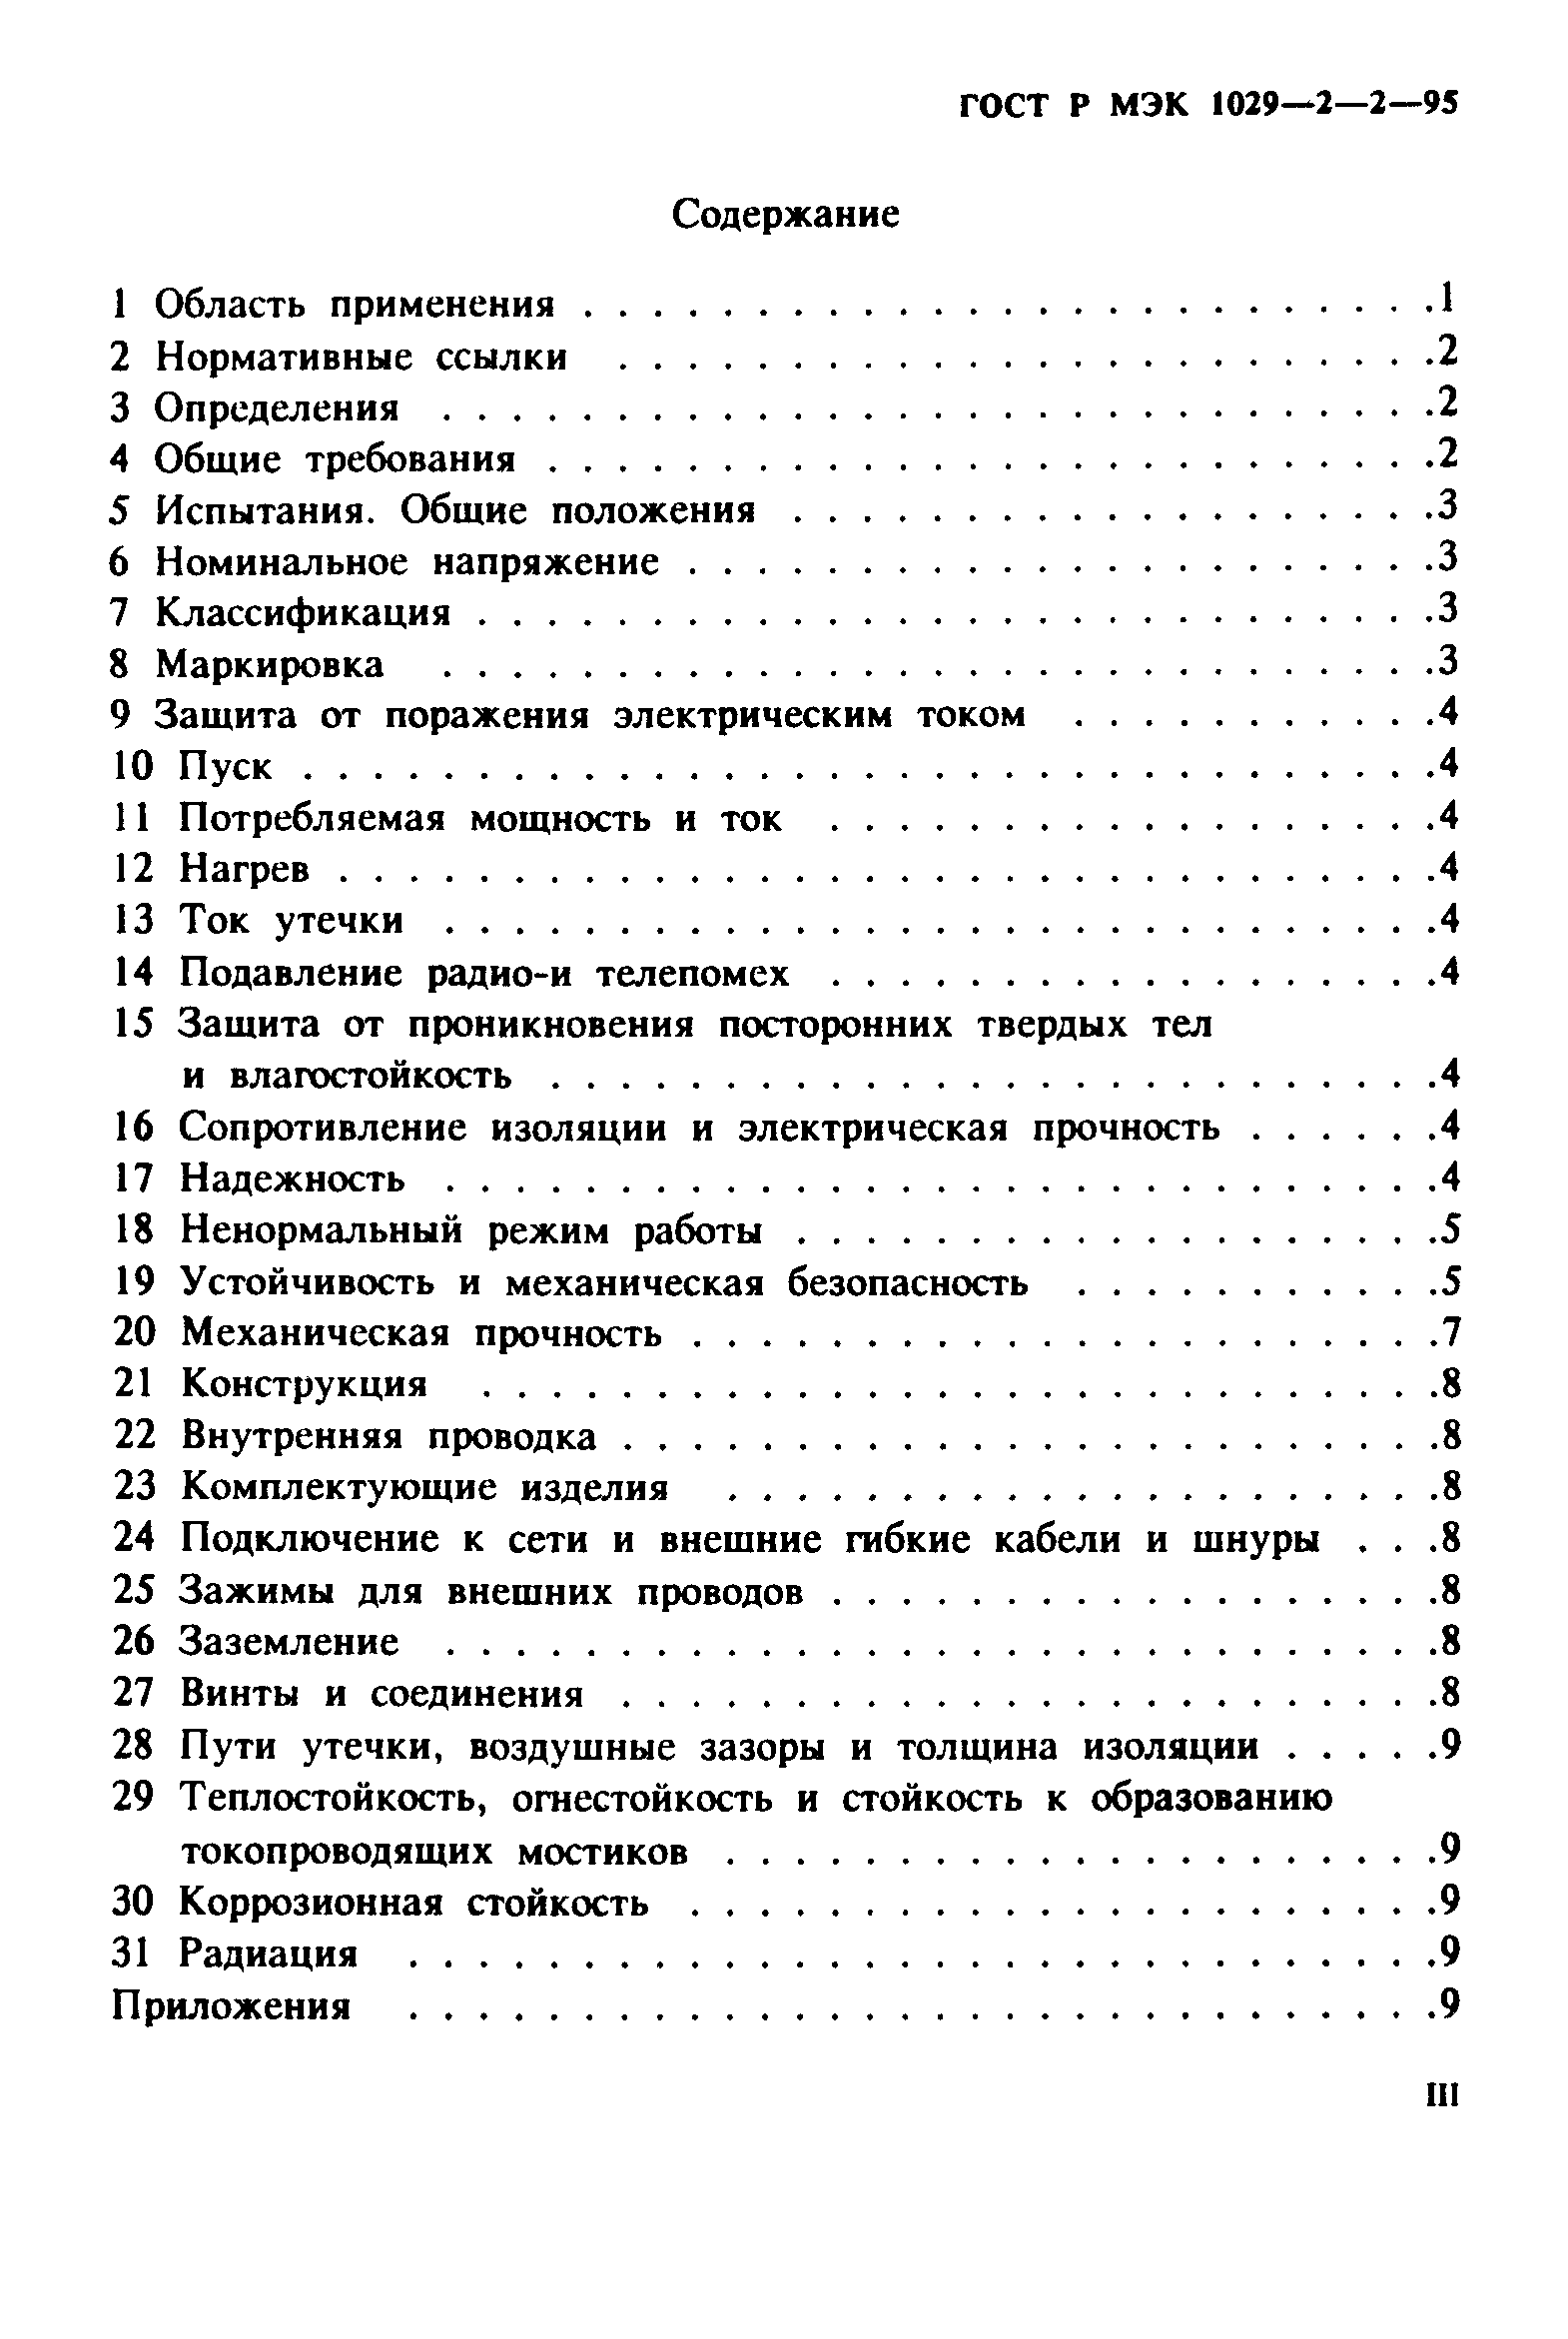 ГОСТ Р МЭК 1029-2-2-95